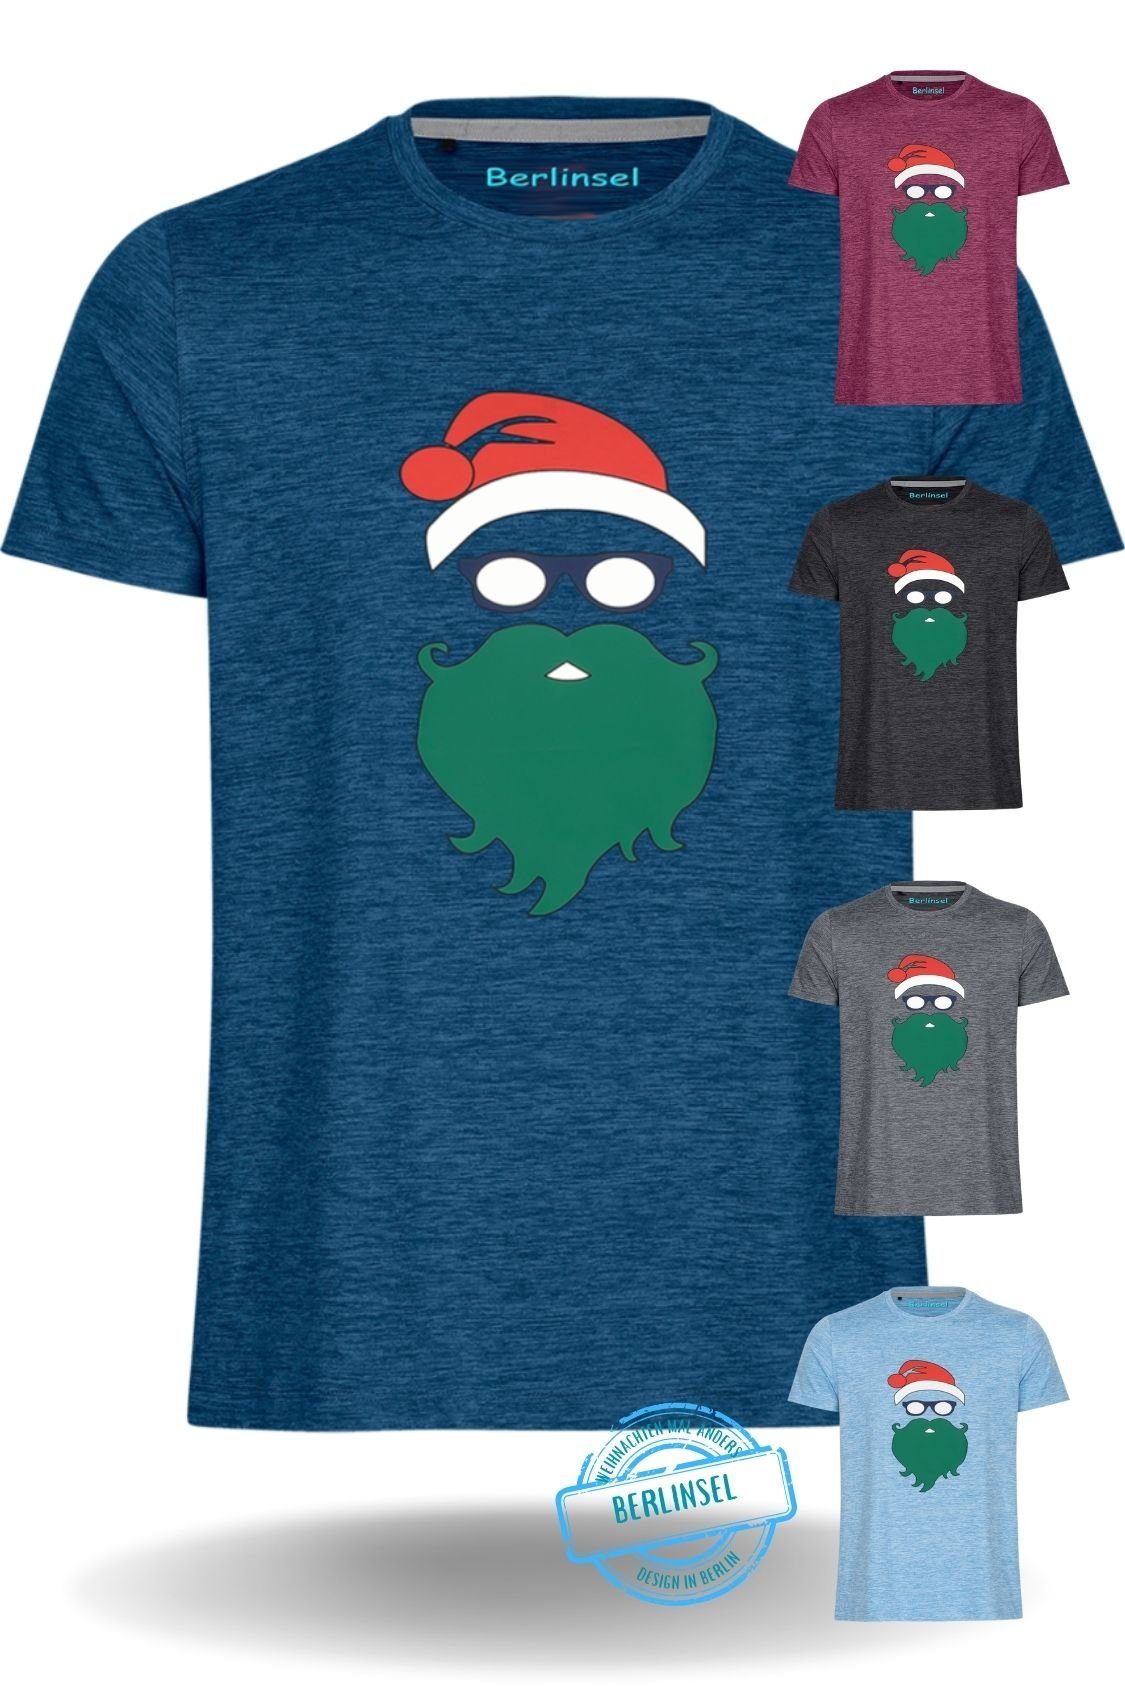 Berlinsel T-Shirt Printshirt Weihnachtsshirt Herren Weihnachtsoutfit Männer blau Weihnachtsfeier, Weihnachtsgeschenk, Weihnachtsfoto